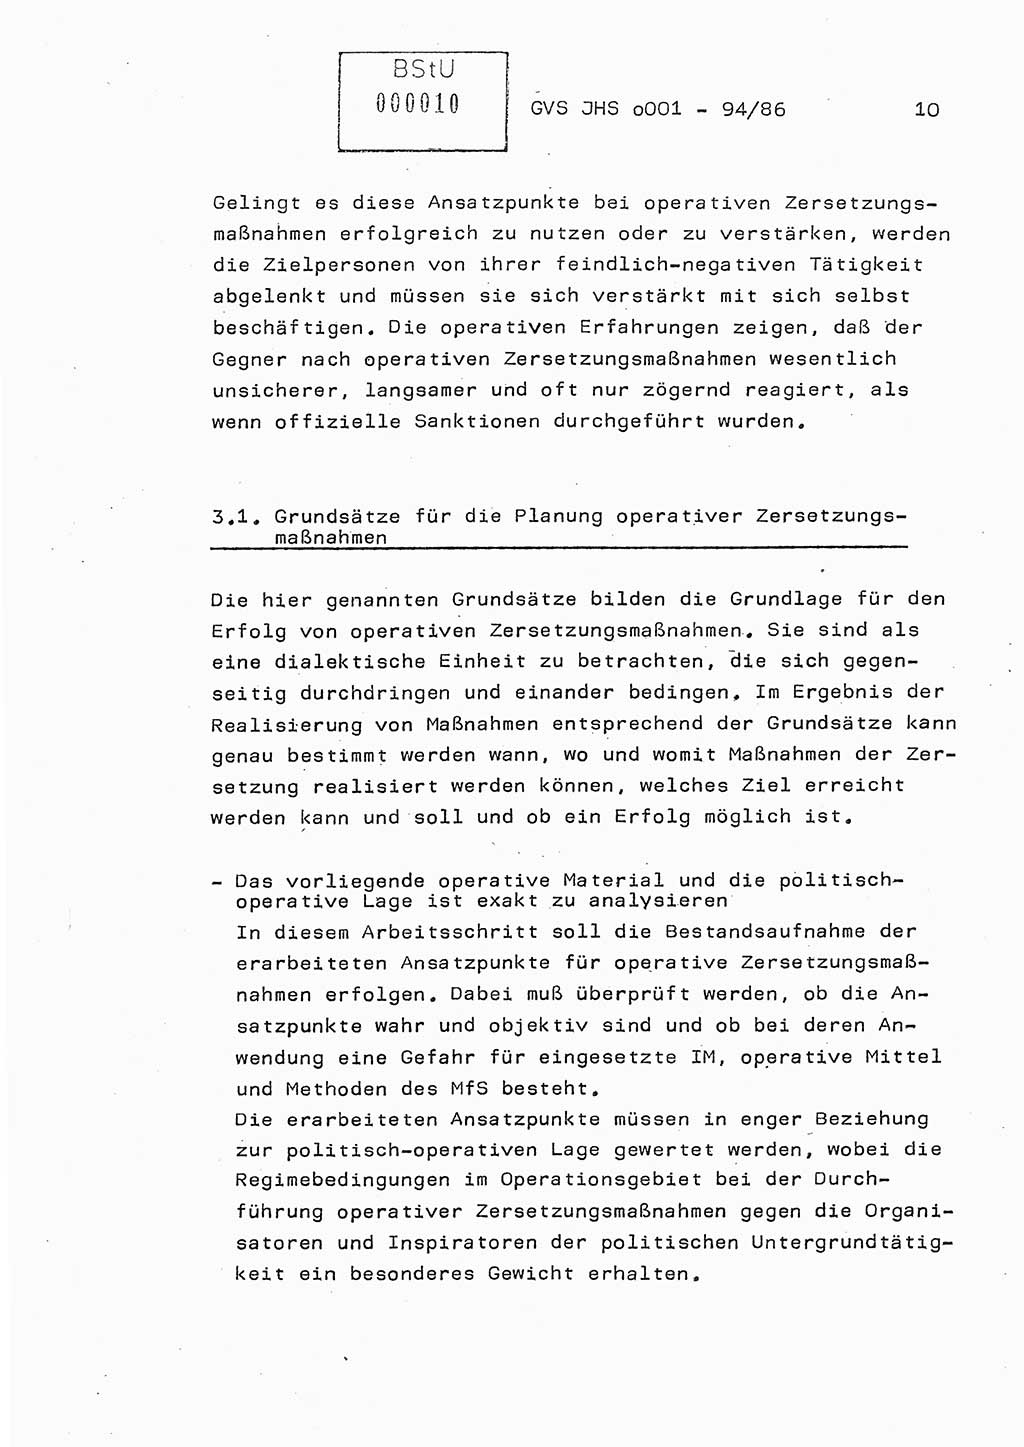 Diplomarbeit Oberleutnant Volkmar Pechmann (HA ⅩⅩ/5), Ministerium für Staatssicherheit (MfS) [Deutsche Demokratische Republik (DDR)], Juristische Hochschule (JHS), Geheime Verschlußsache (GVS) o001-94/86, Potsdam 1986, Blatt 10 (Dipl.-Arb. MfS DDR JHS GVS o001-94/86 1986, Bl. 10)